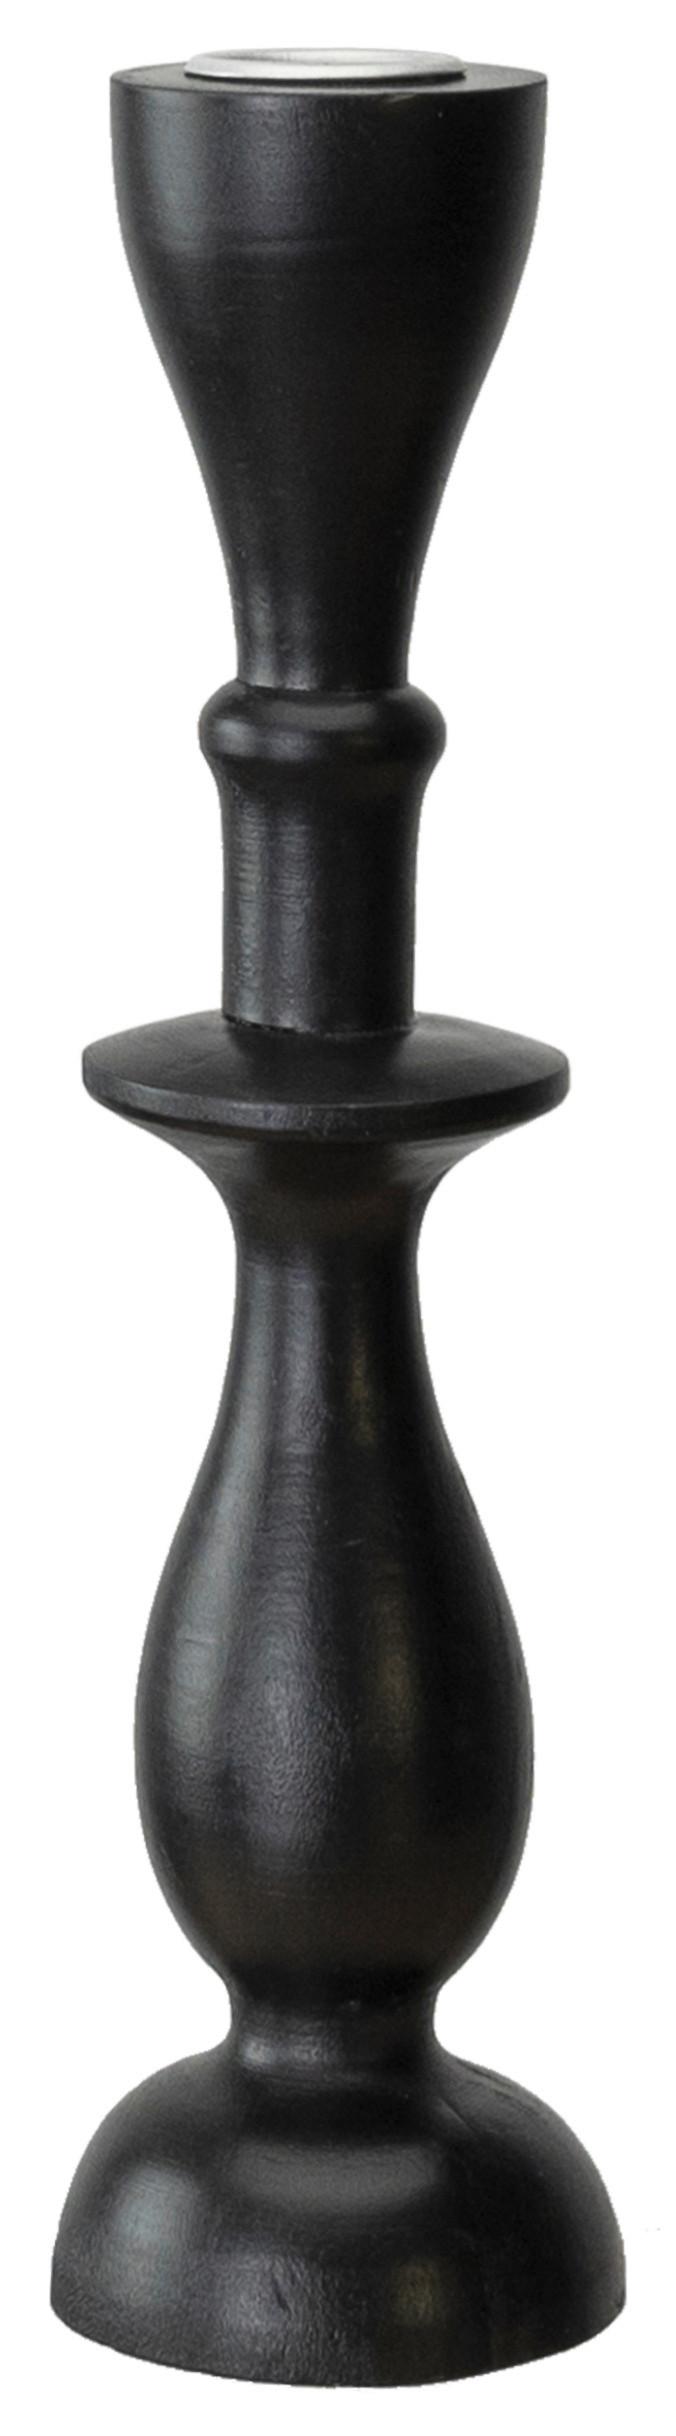 Stojan Na Dlouhé Svíčky Noir, Výška: 23cm - černá, kov/kompozitní dřevo (7,3/22,7cm) - Modern Living